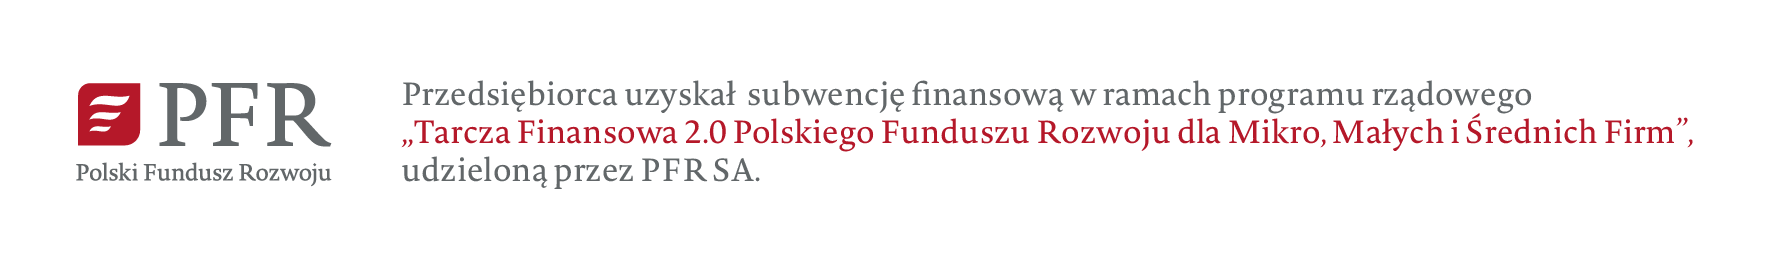 Przedsiębiorca uzyskał subwencję finansową w ramach programu rządowego Tarcza Finansowa 2.0 oraz 6.0 Polskiego Funduszu Rozwoju dla Mikro, Małych i Średnich Firm, udzieloną przez PFR S.A.